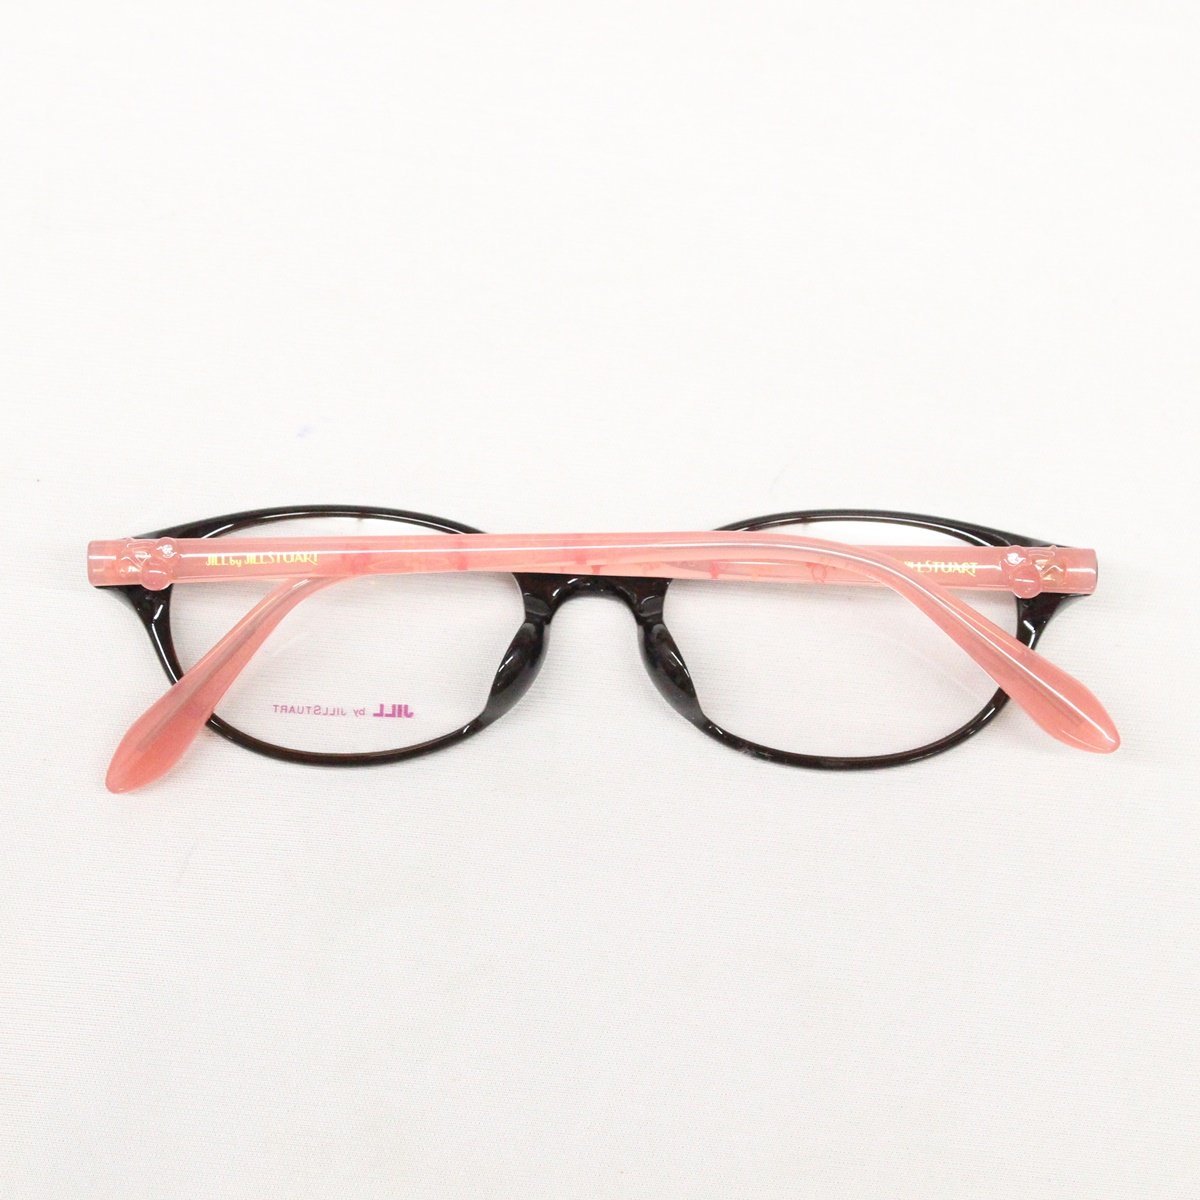 JILL STUART Jill Stuart glasses glasses frame 02-0043 C02 black / pink unused goods **2